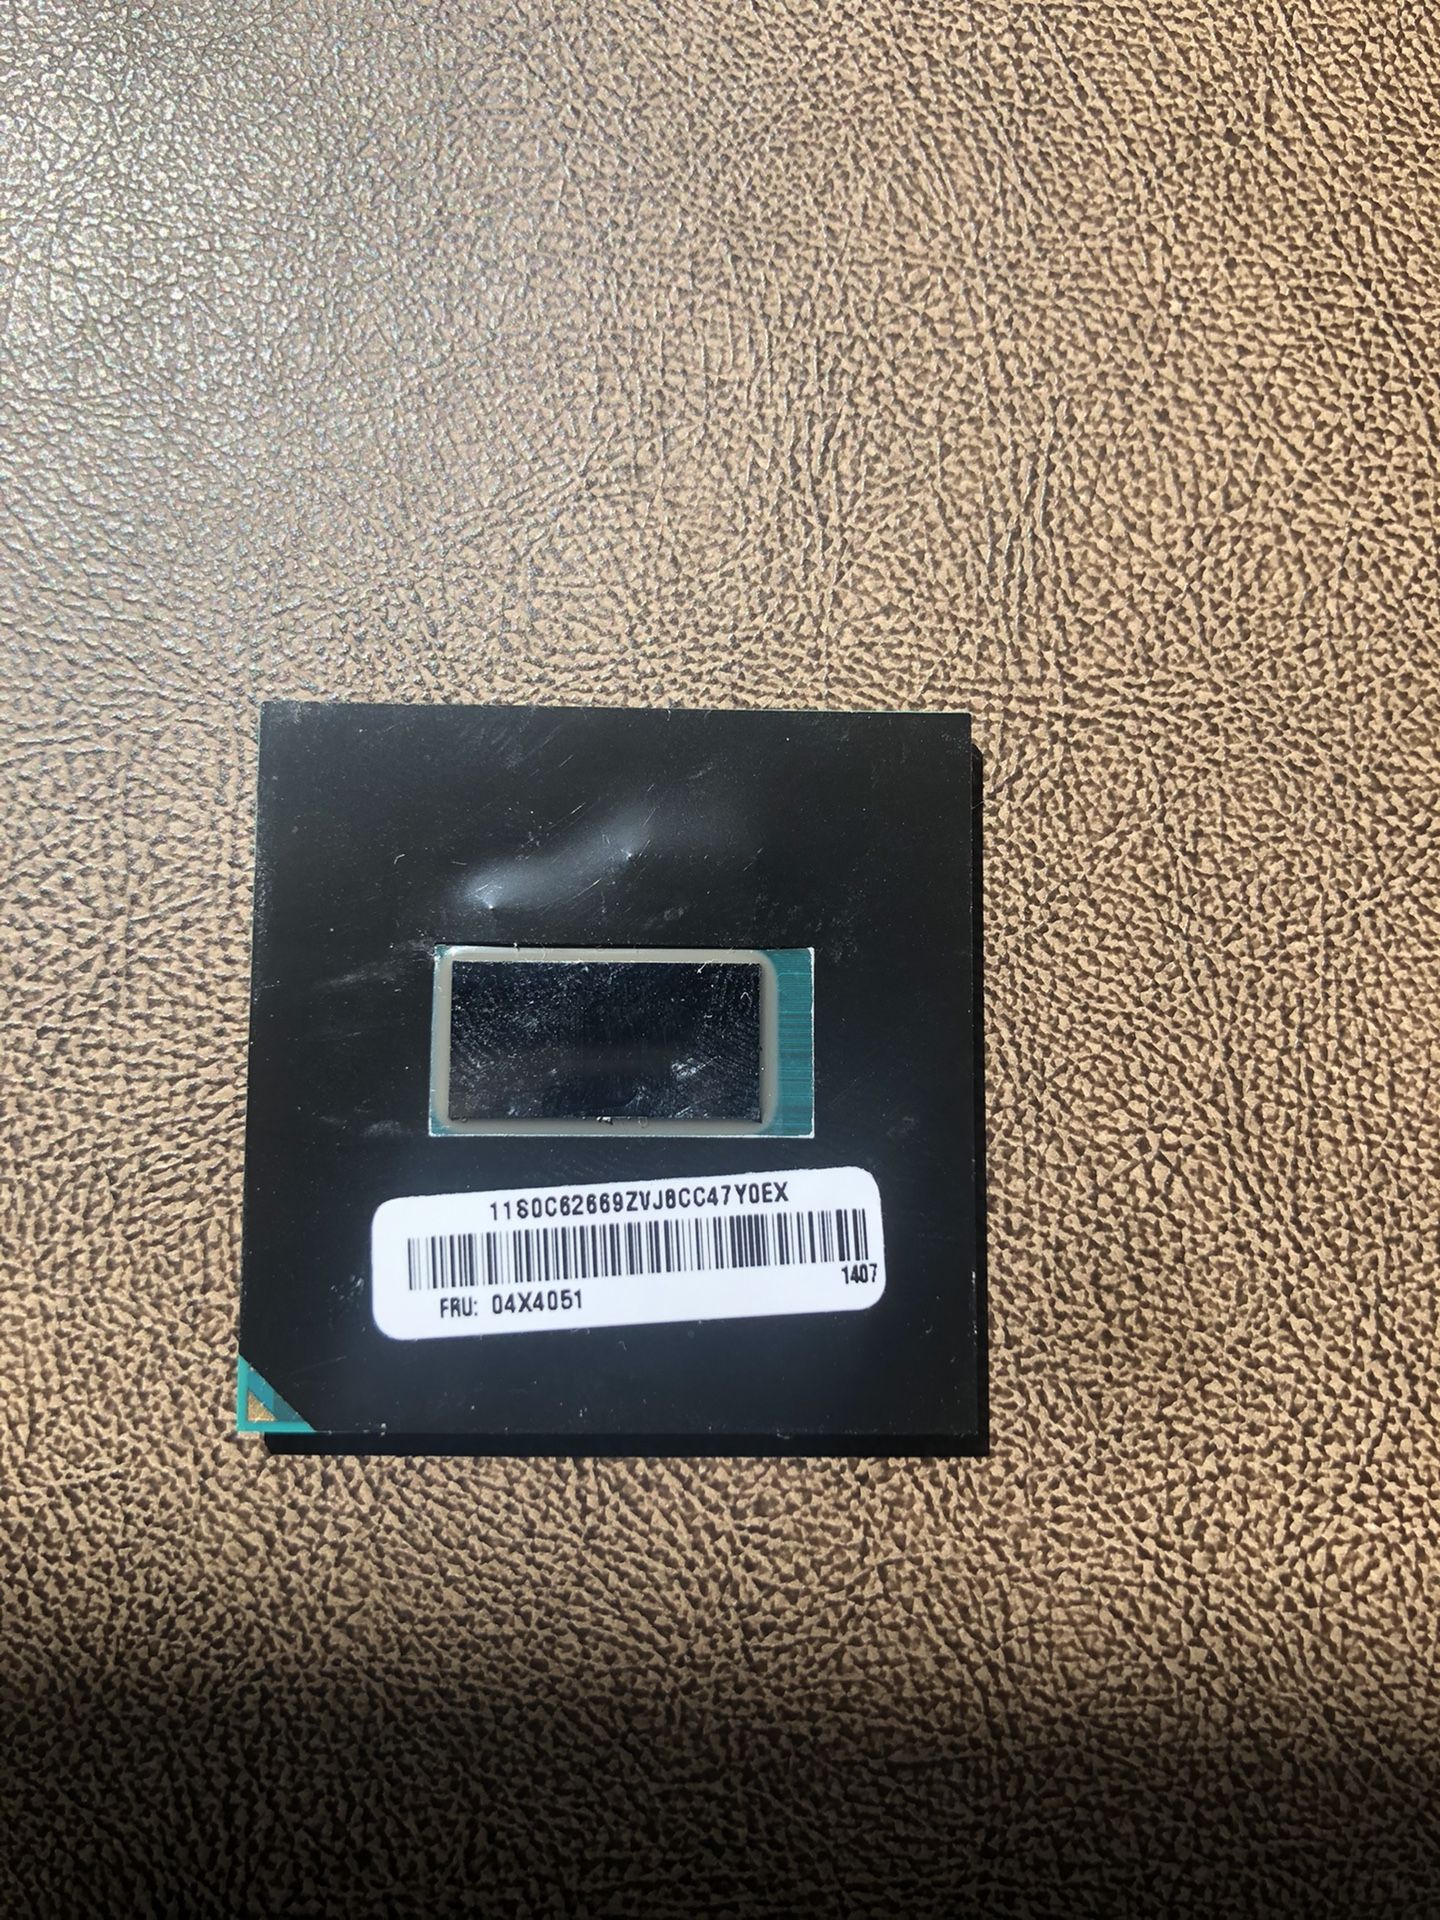 Intel i5-4300m CPU